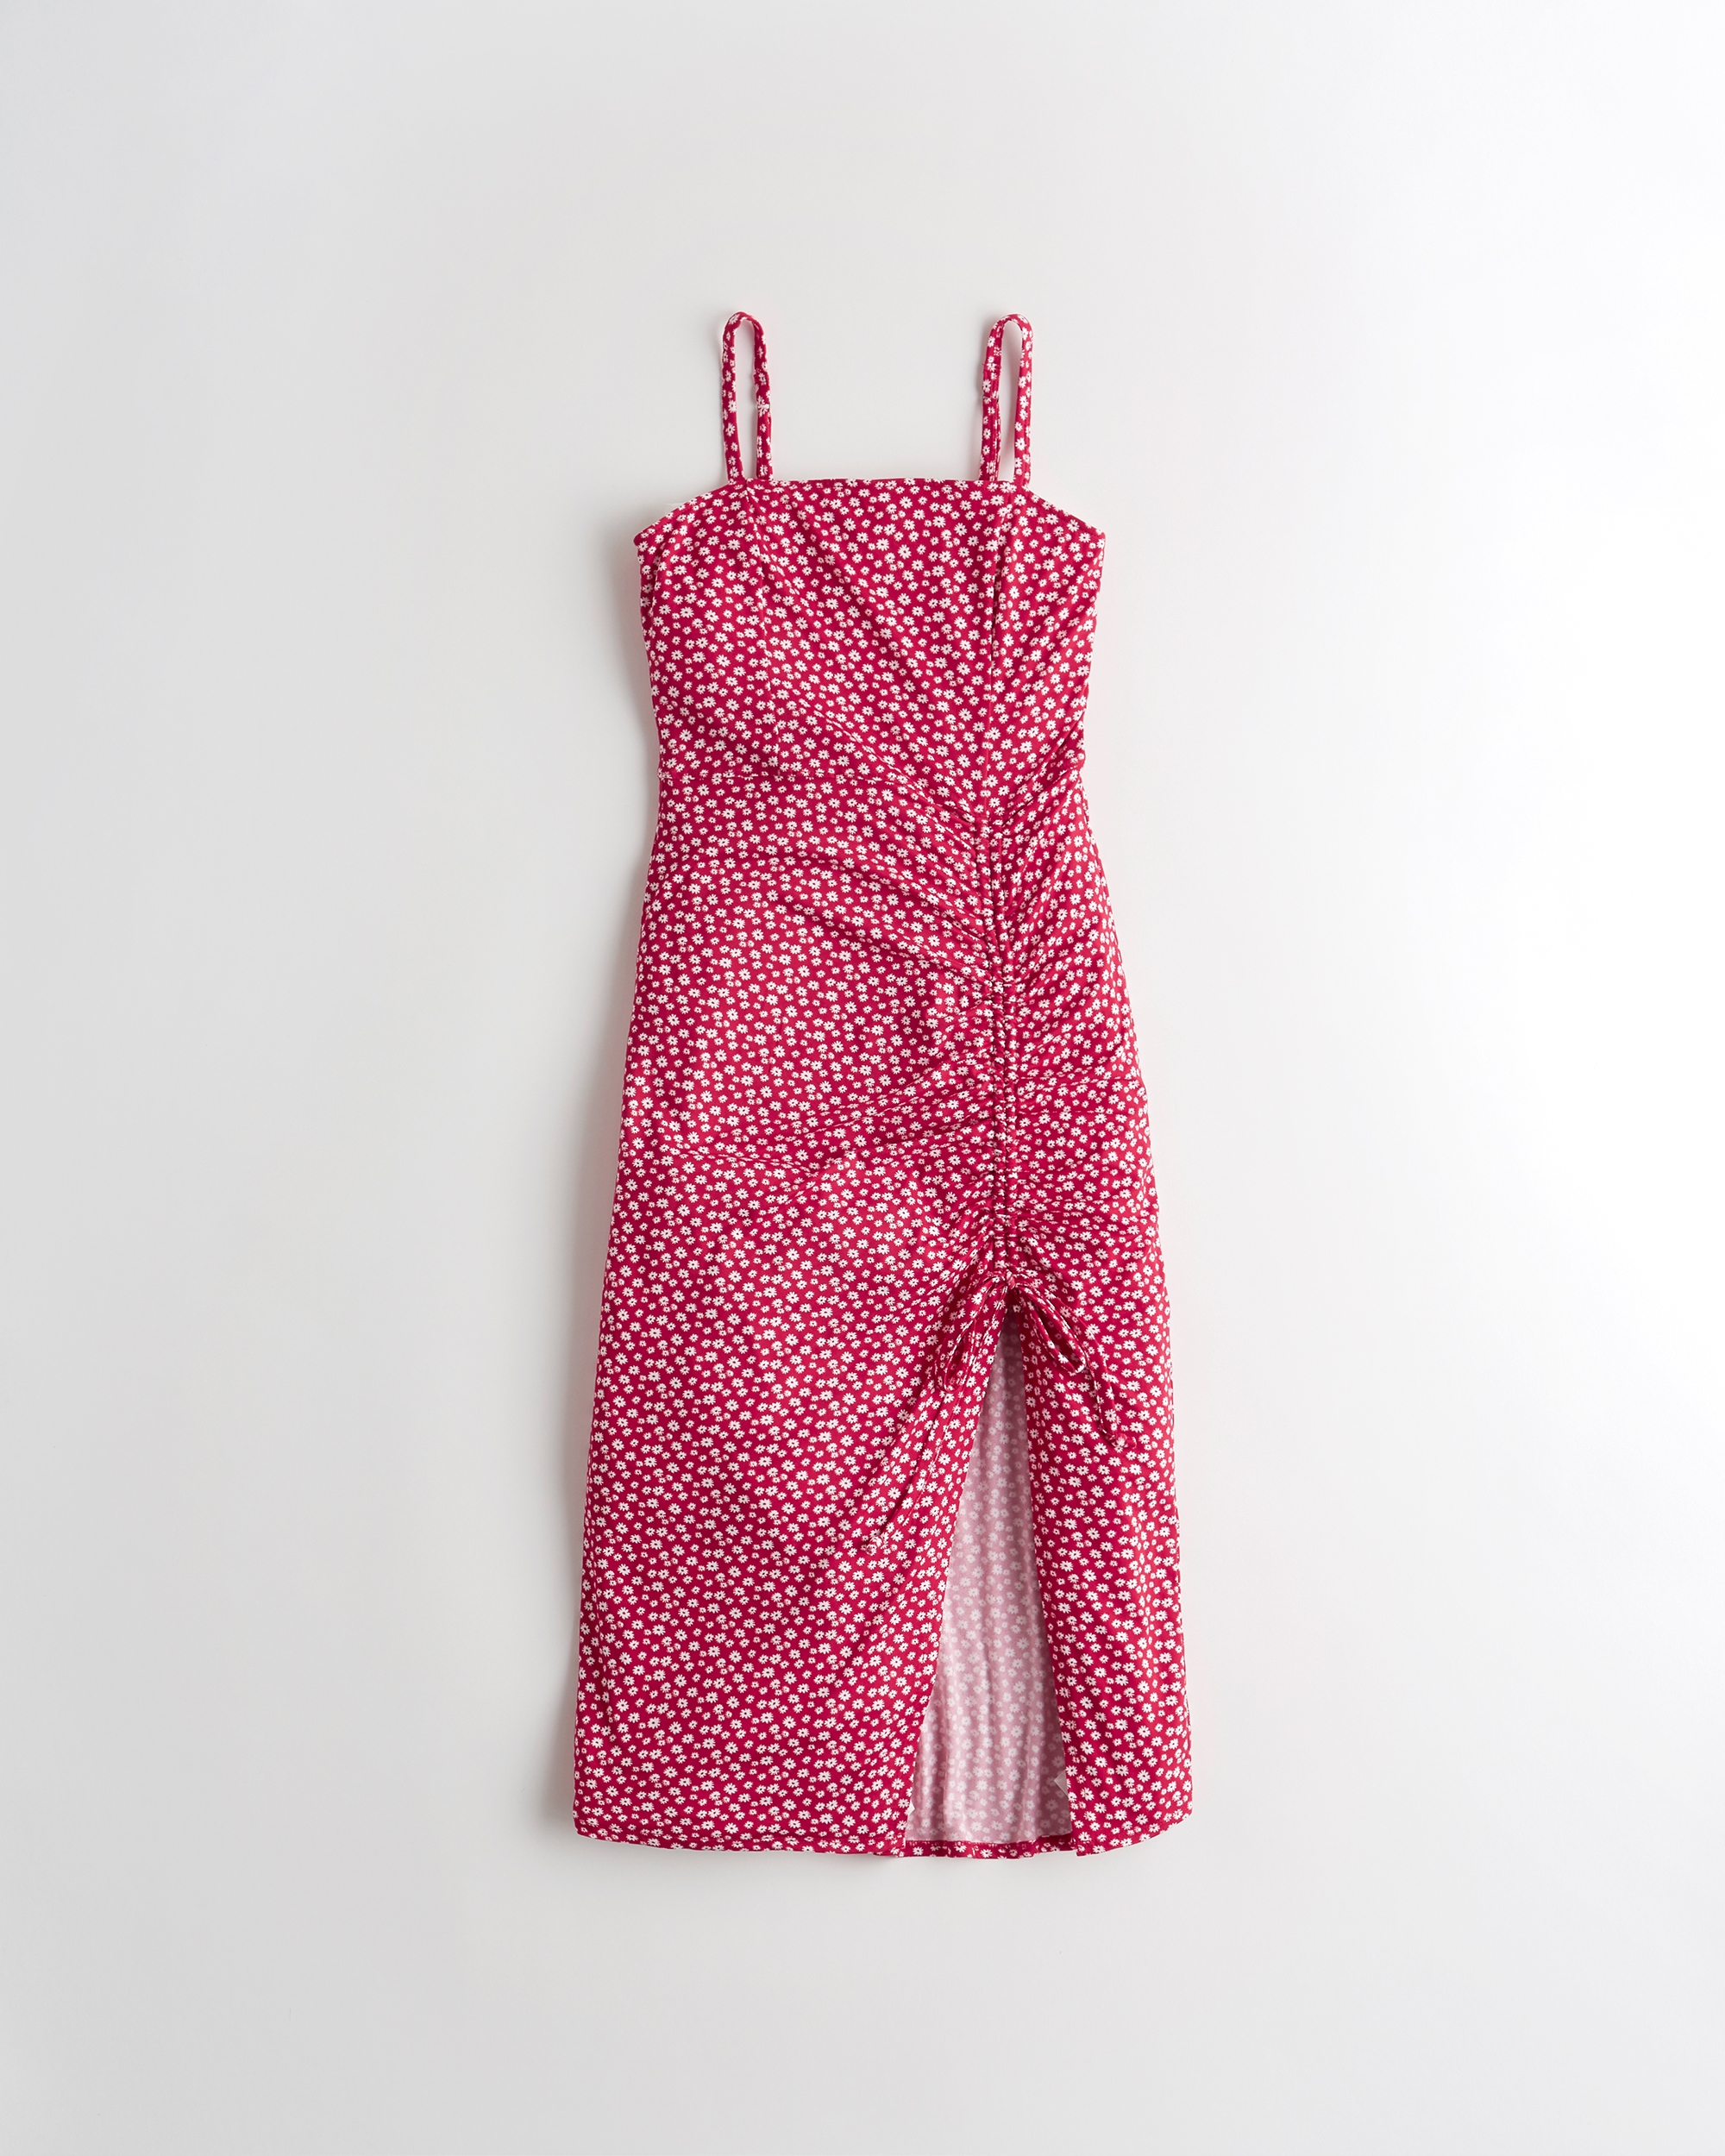 hollister pink dress